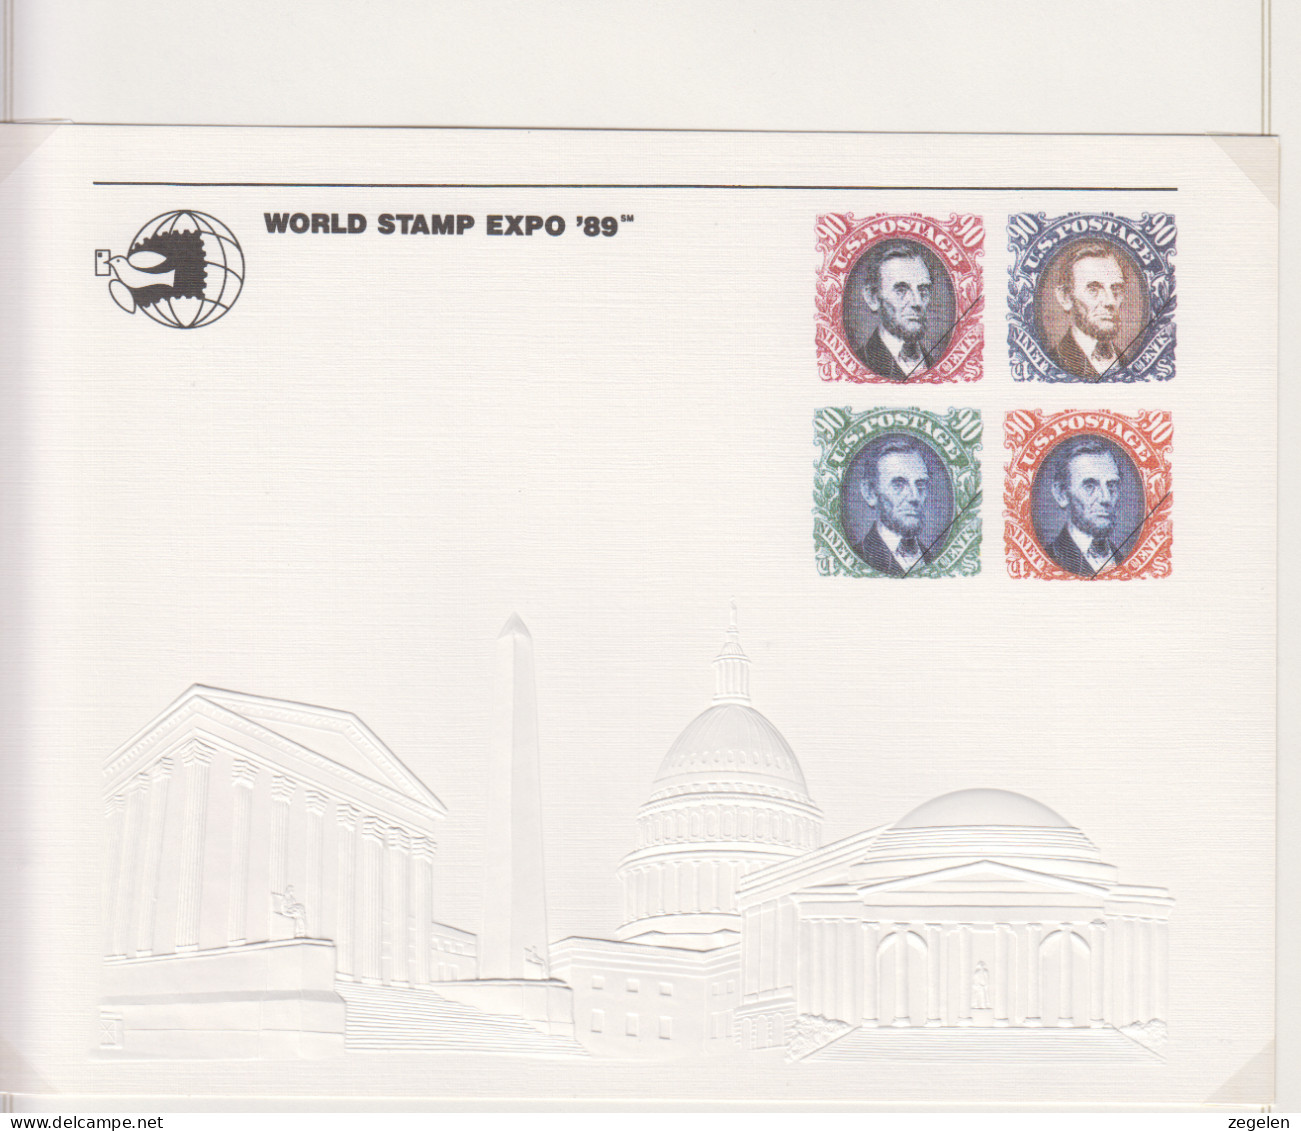 Verenigde Staten  Scott-cat Souvenierkaart SC127 World Stamp Expo 89 - Souvenirkarten